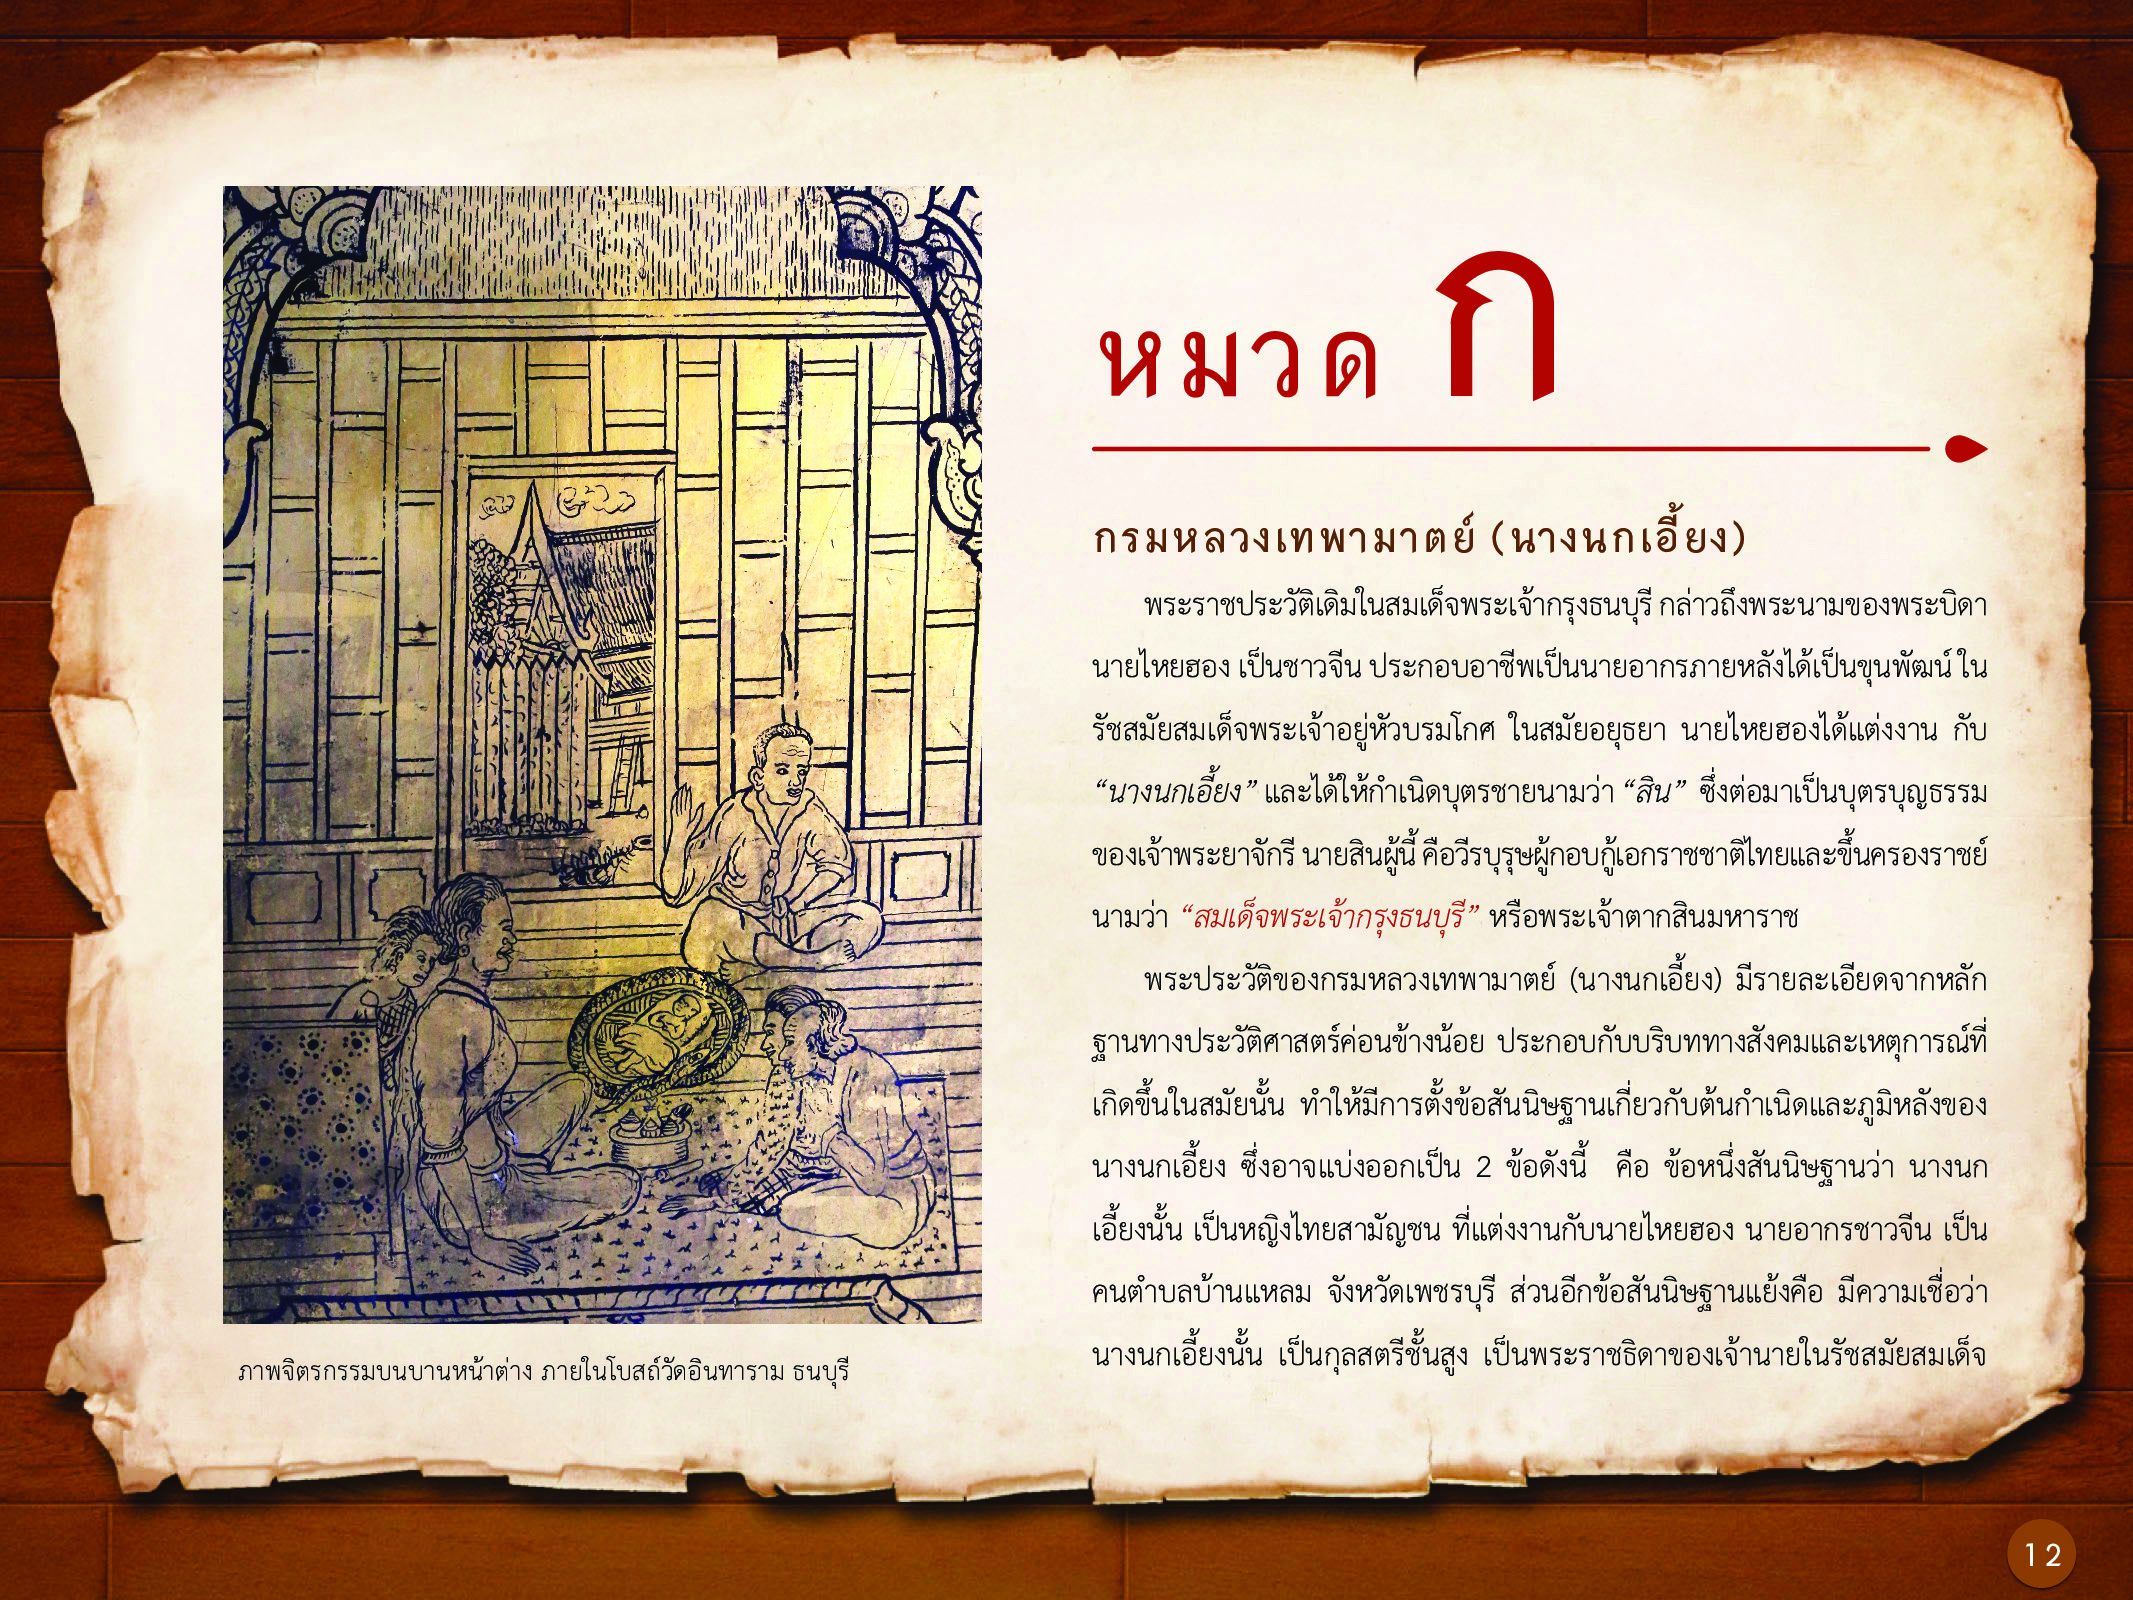 ประวัติศาสตร์กรุงธนบุรี ./images/history_dhonburi/12.jpg